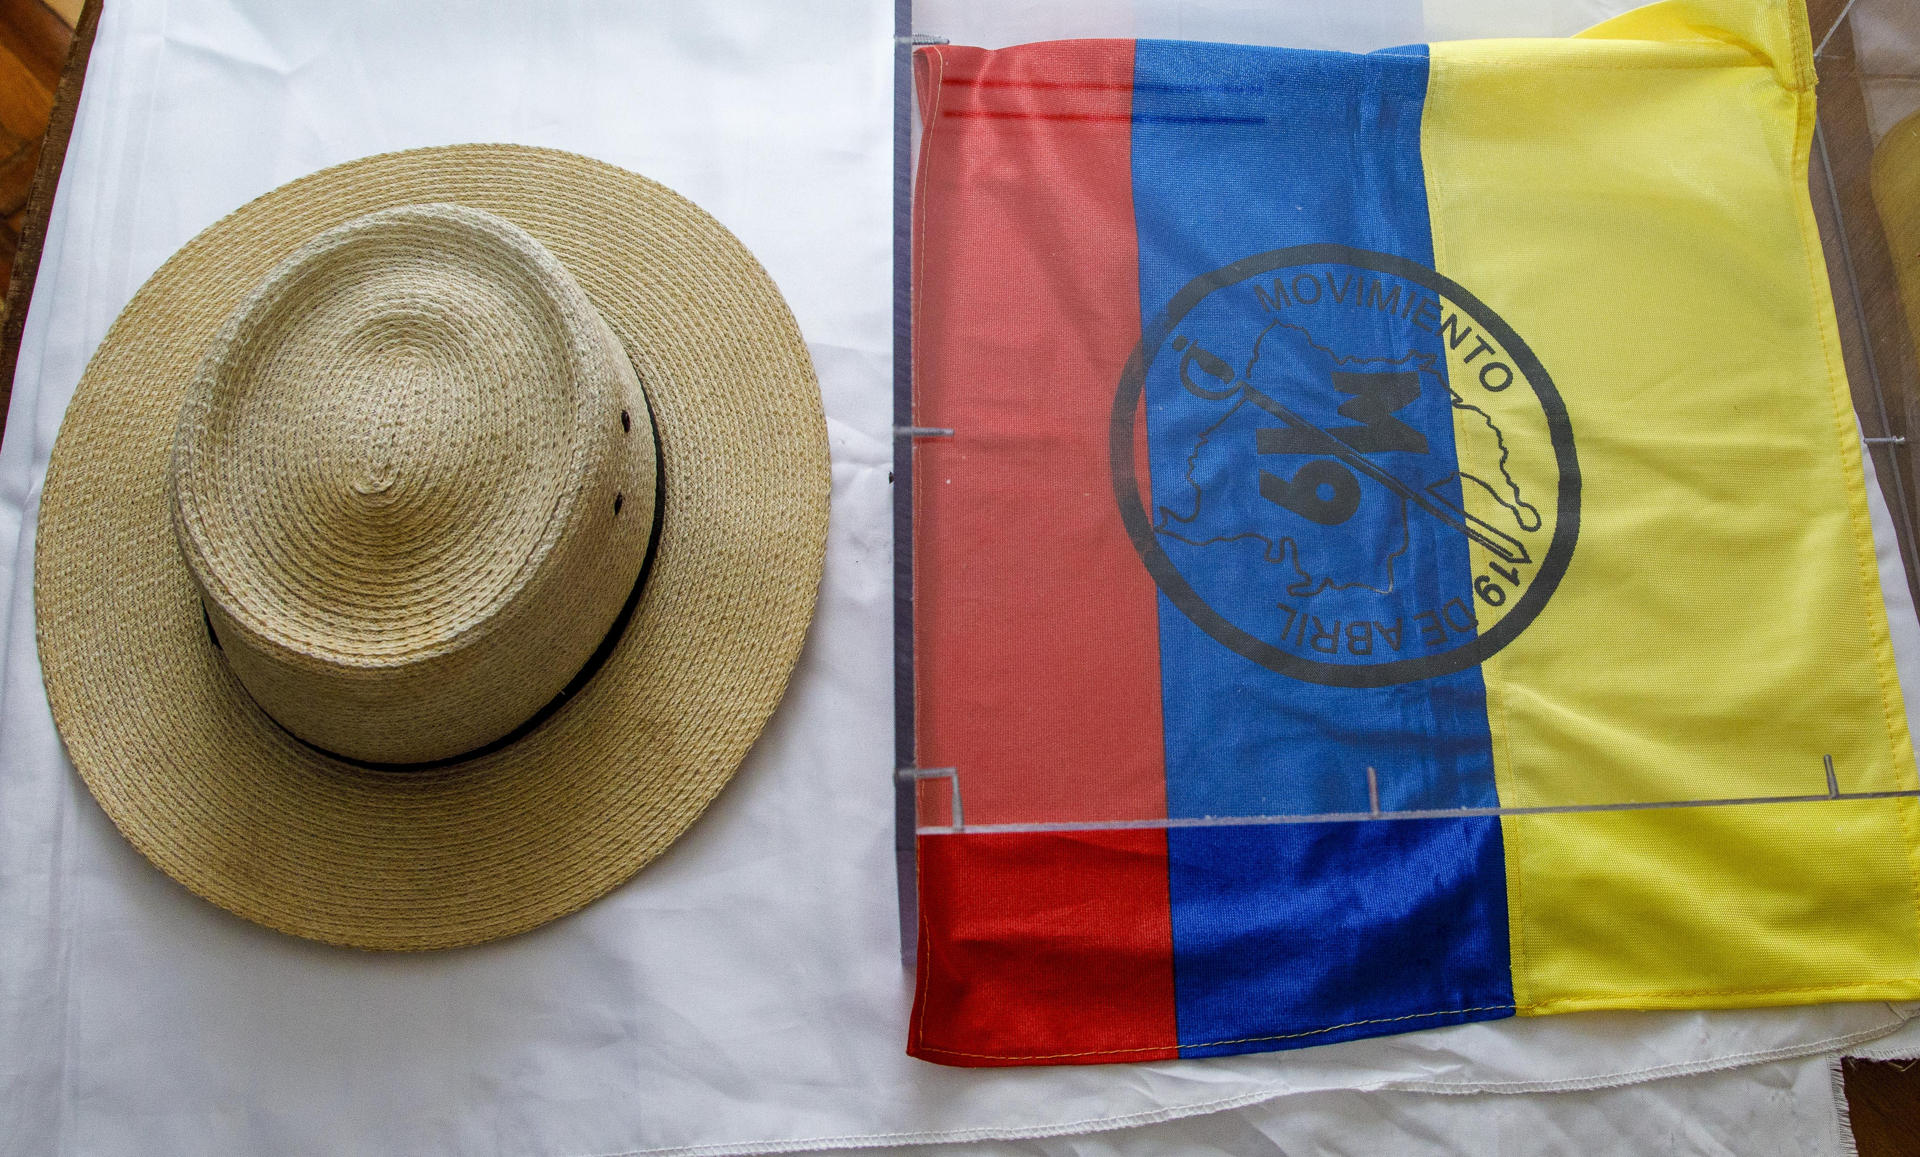 La aclaratoria del gobierno colombiano luego de que Petro enalteciera el sombrero de un guerrillero